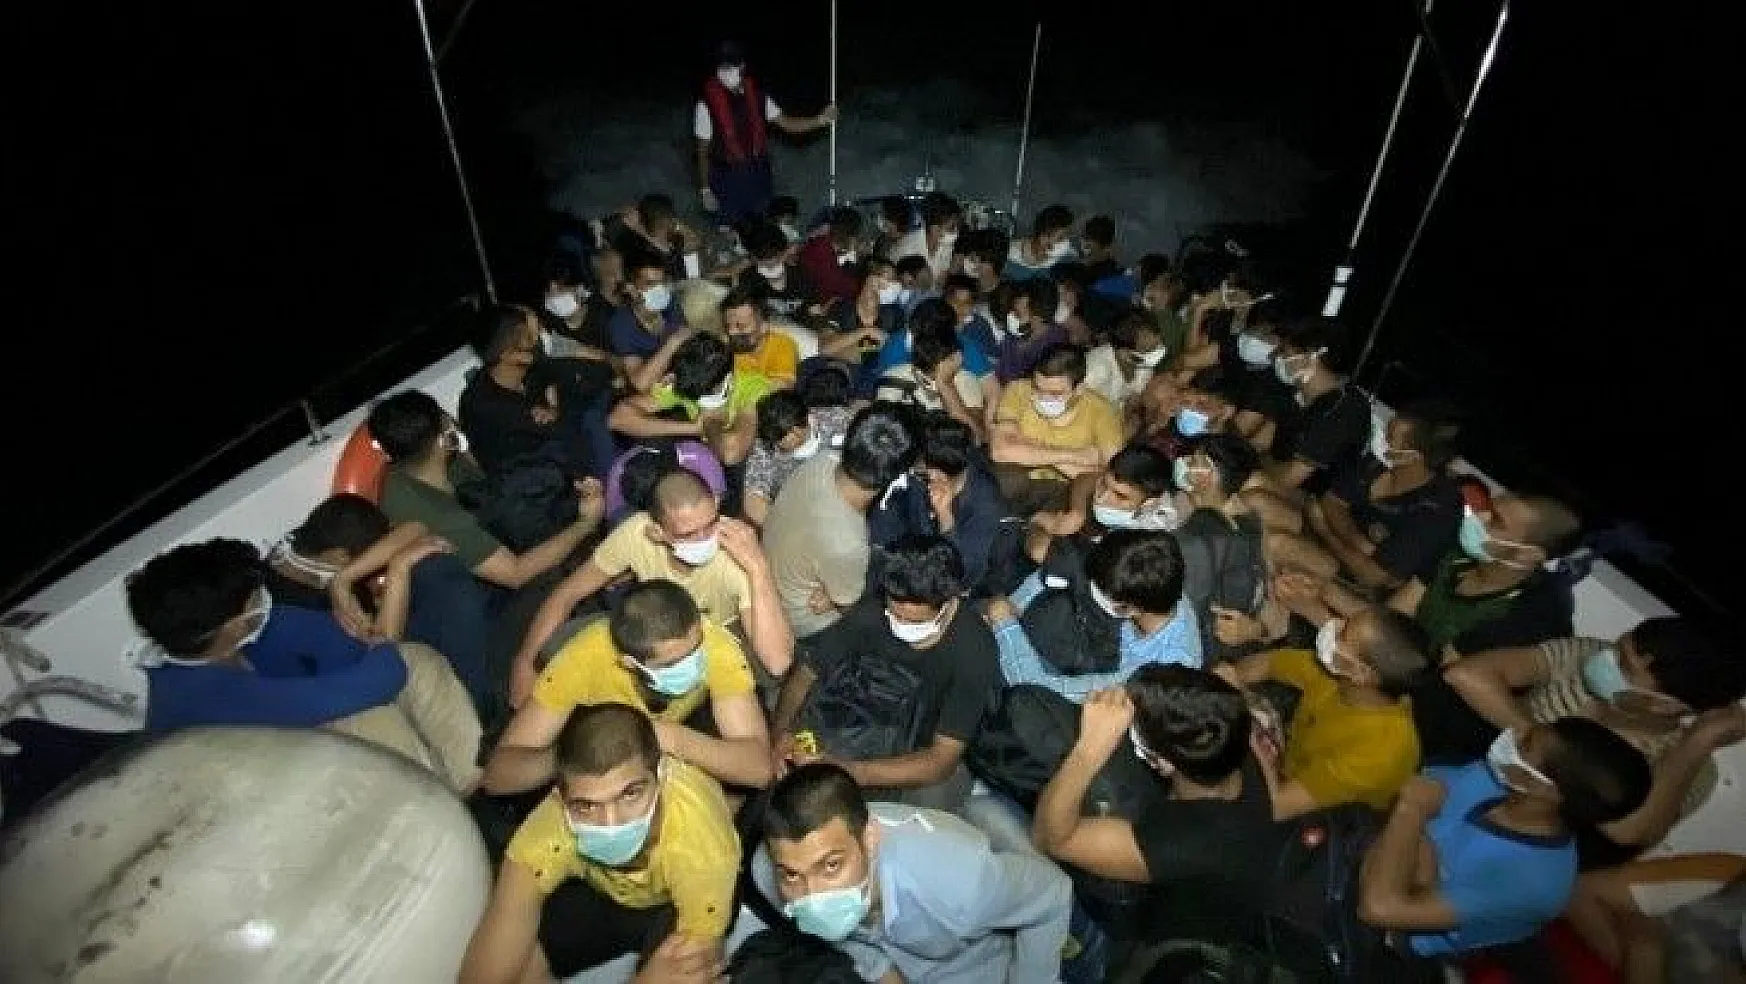 Yelkenli teknede 63 göçmen yakalandı